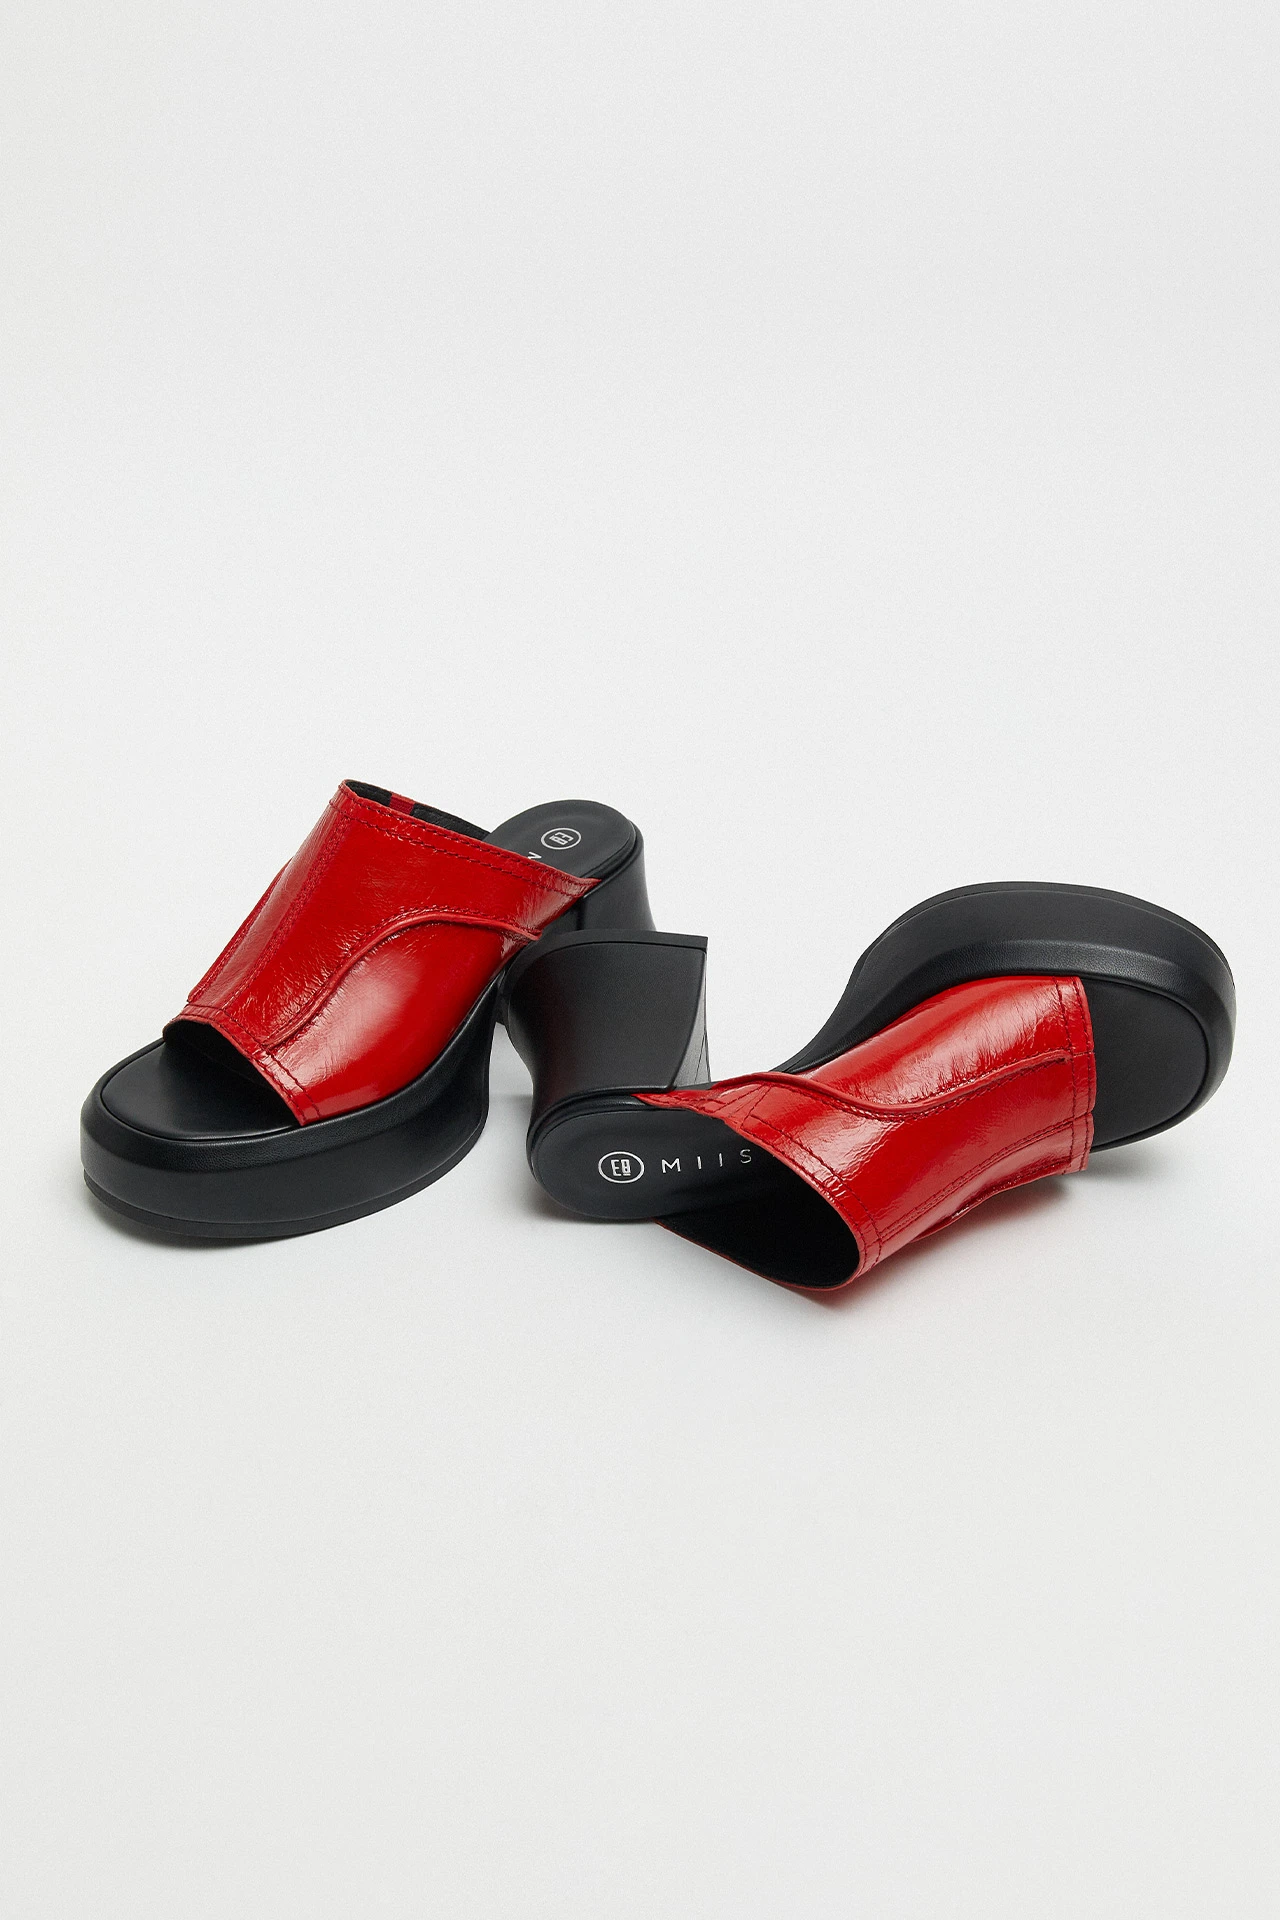 E8-Lota-Red-Sandal-02